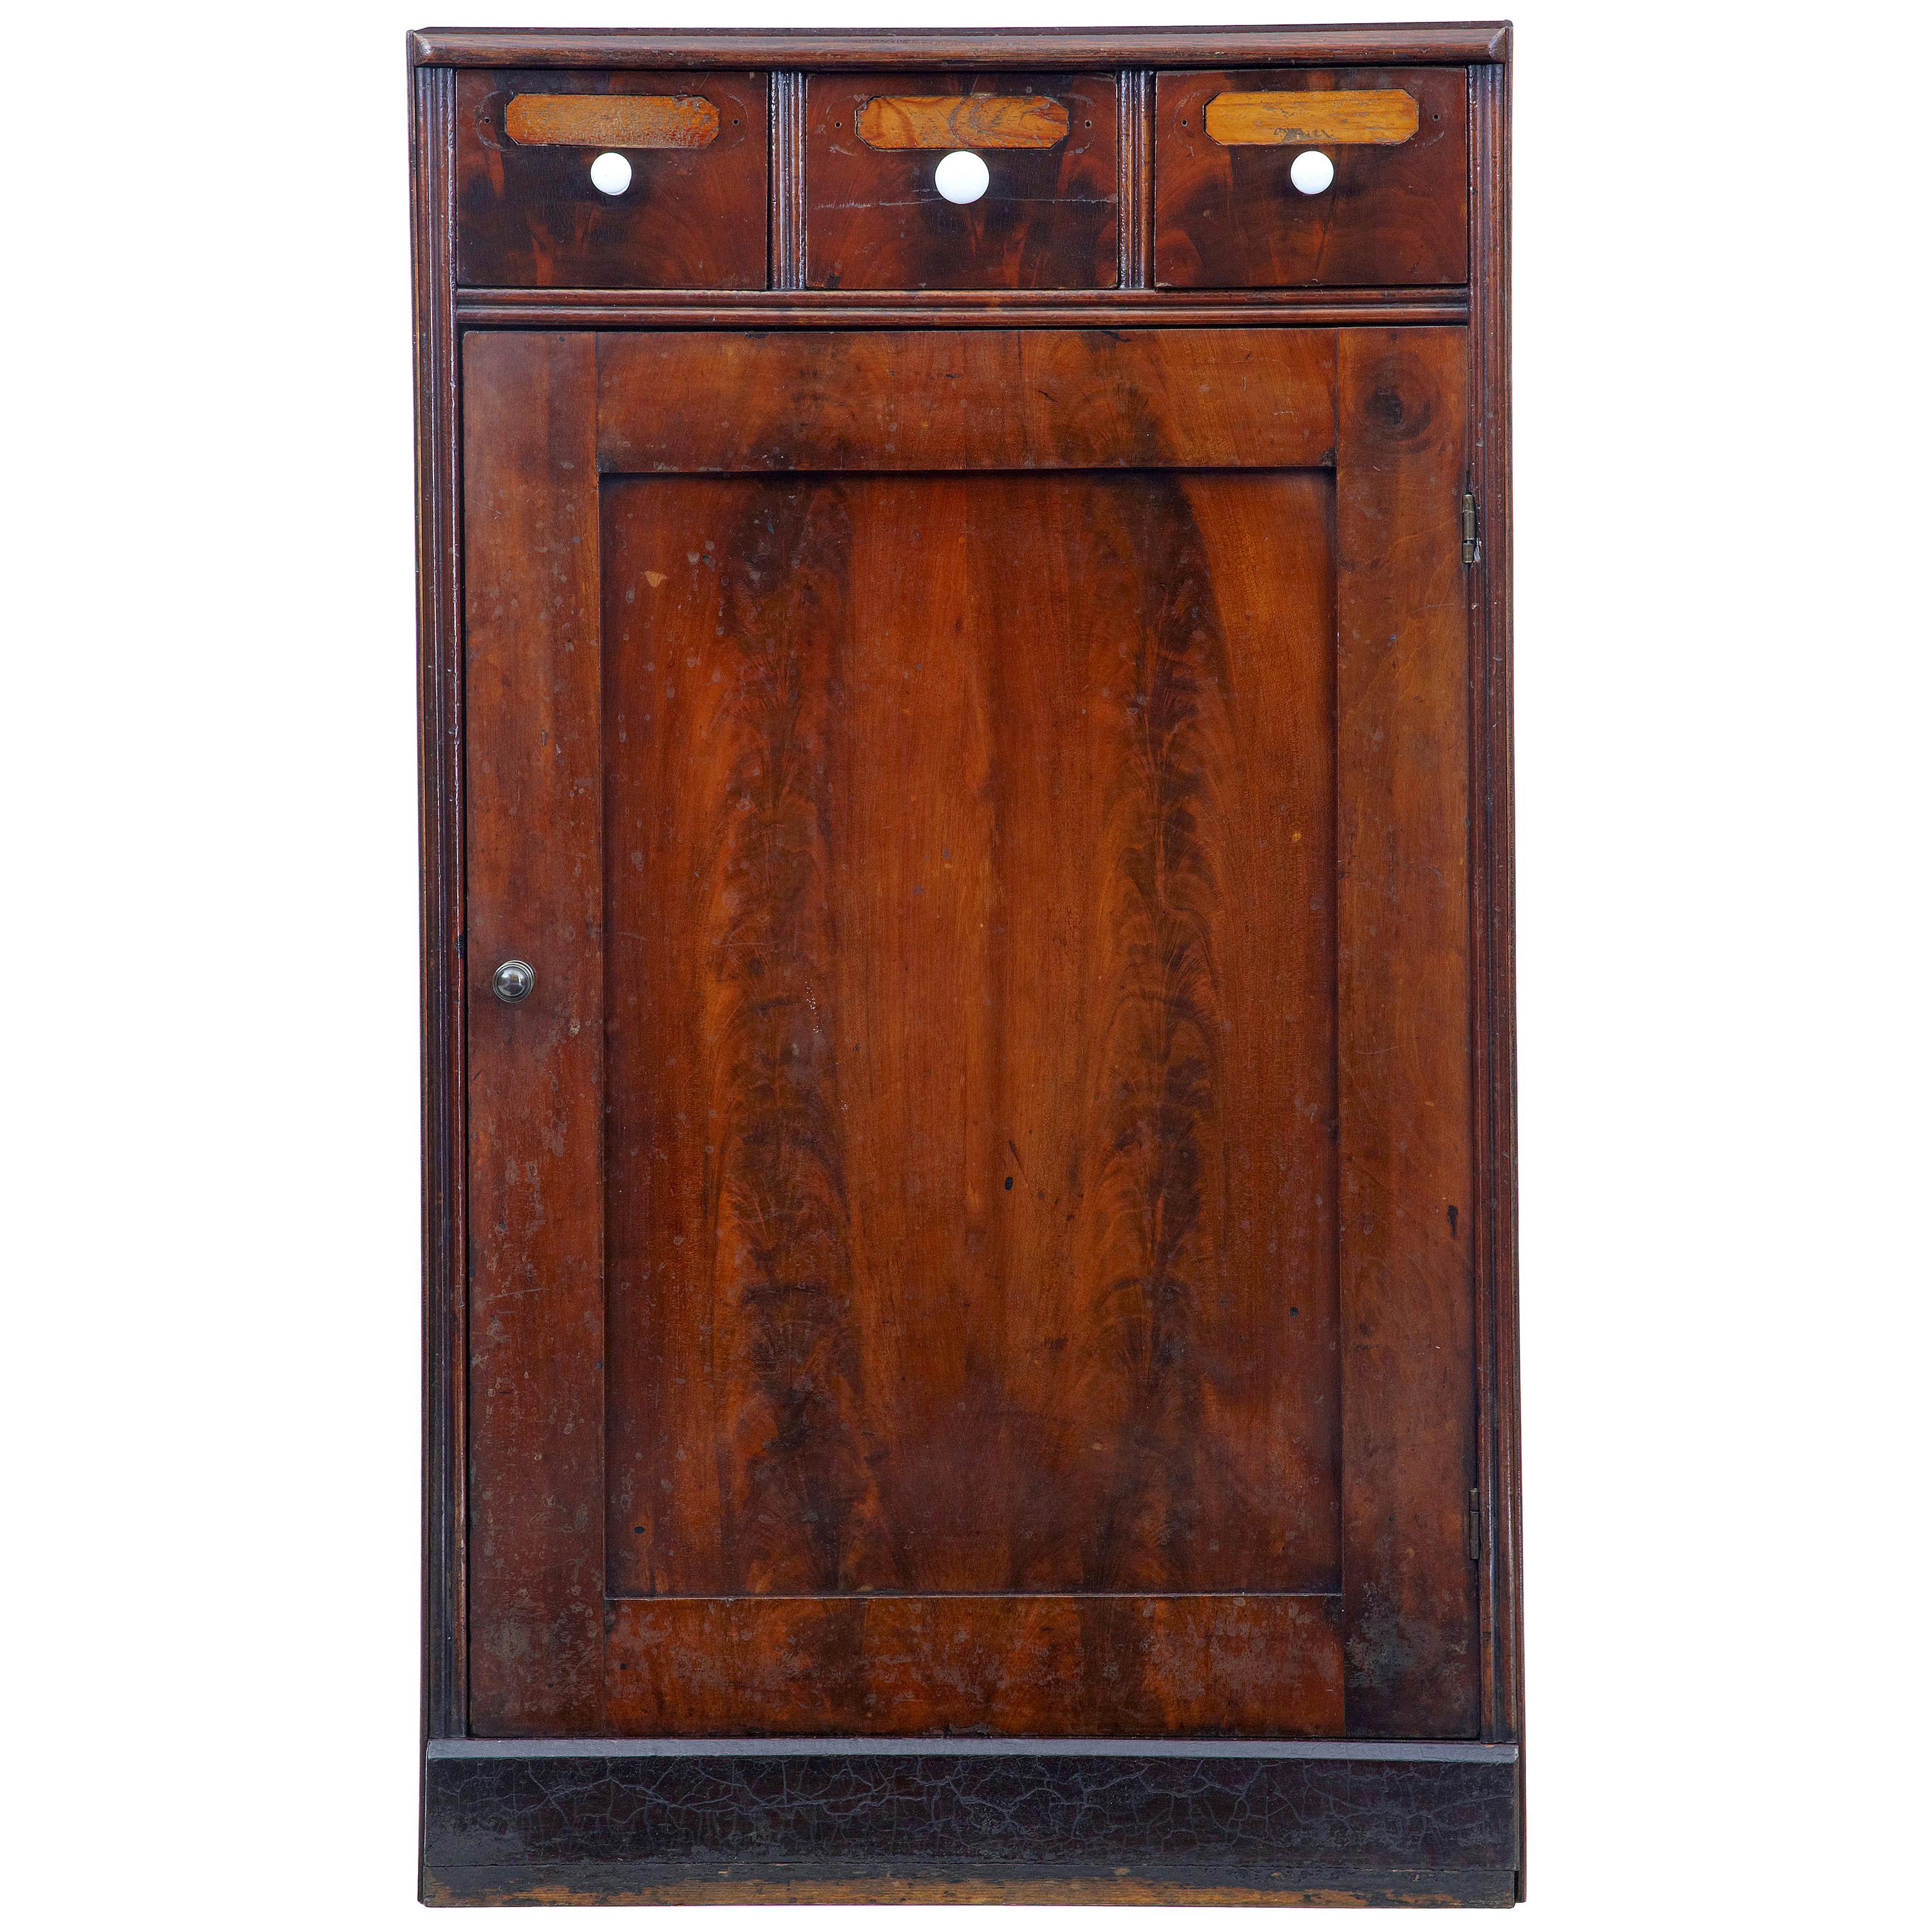 19th Century Mahogany and Oak Apothecary Cabinet